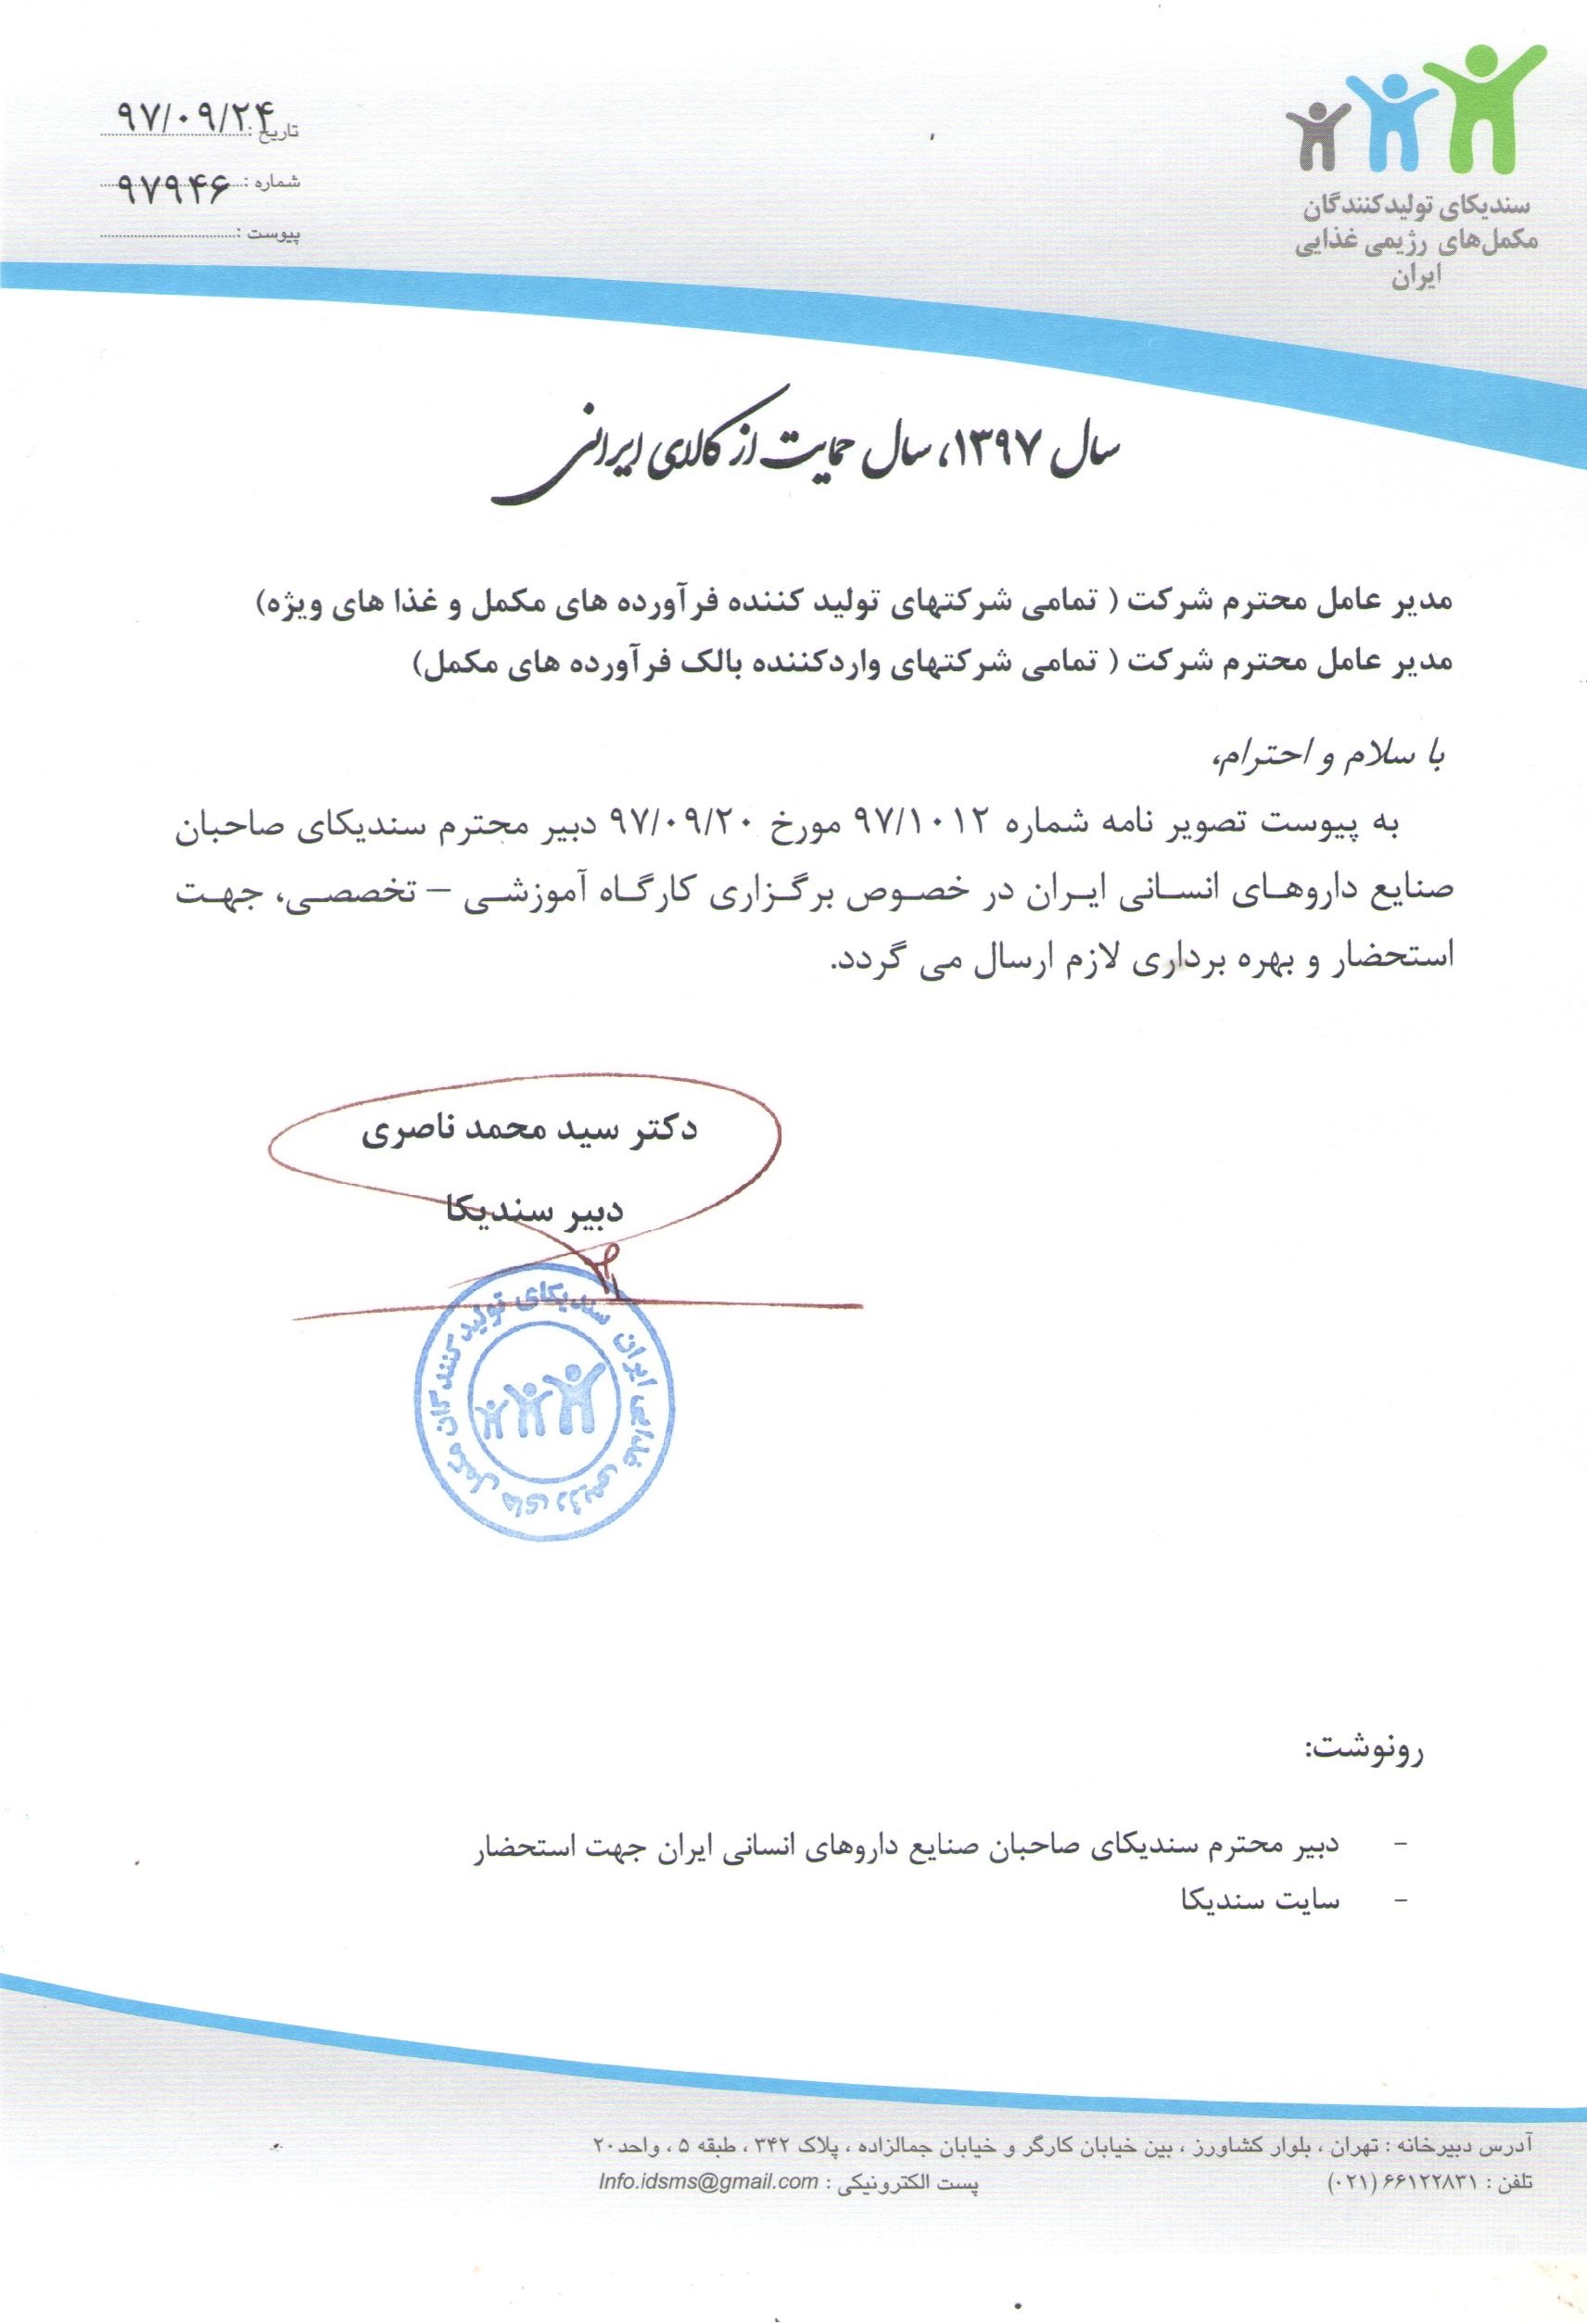 نامه در خصوص برگزاری کارگاه آموزشی-تخصصی توسط سندیکای صاحبان صنایع داروهای انسانی ایران